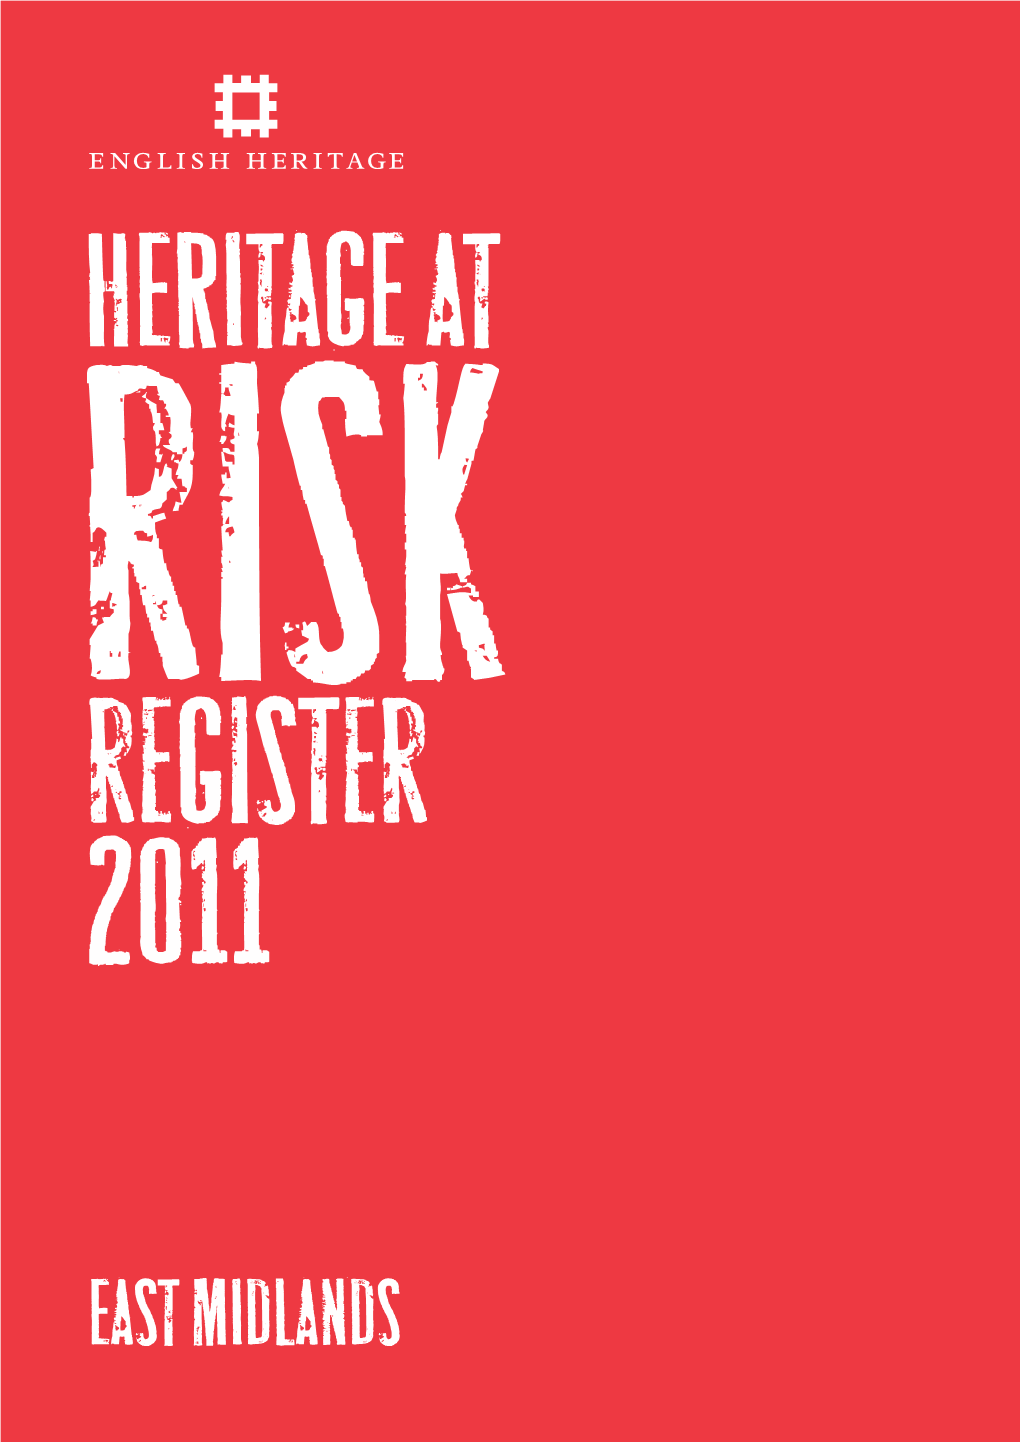 Heritage at Risk Register 2011 / East Midlands